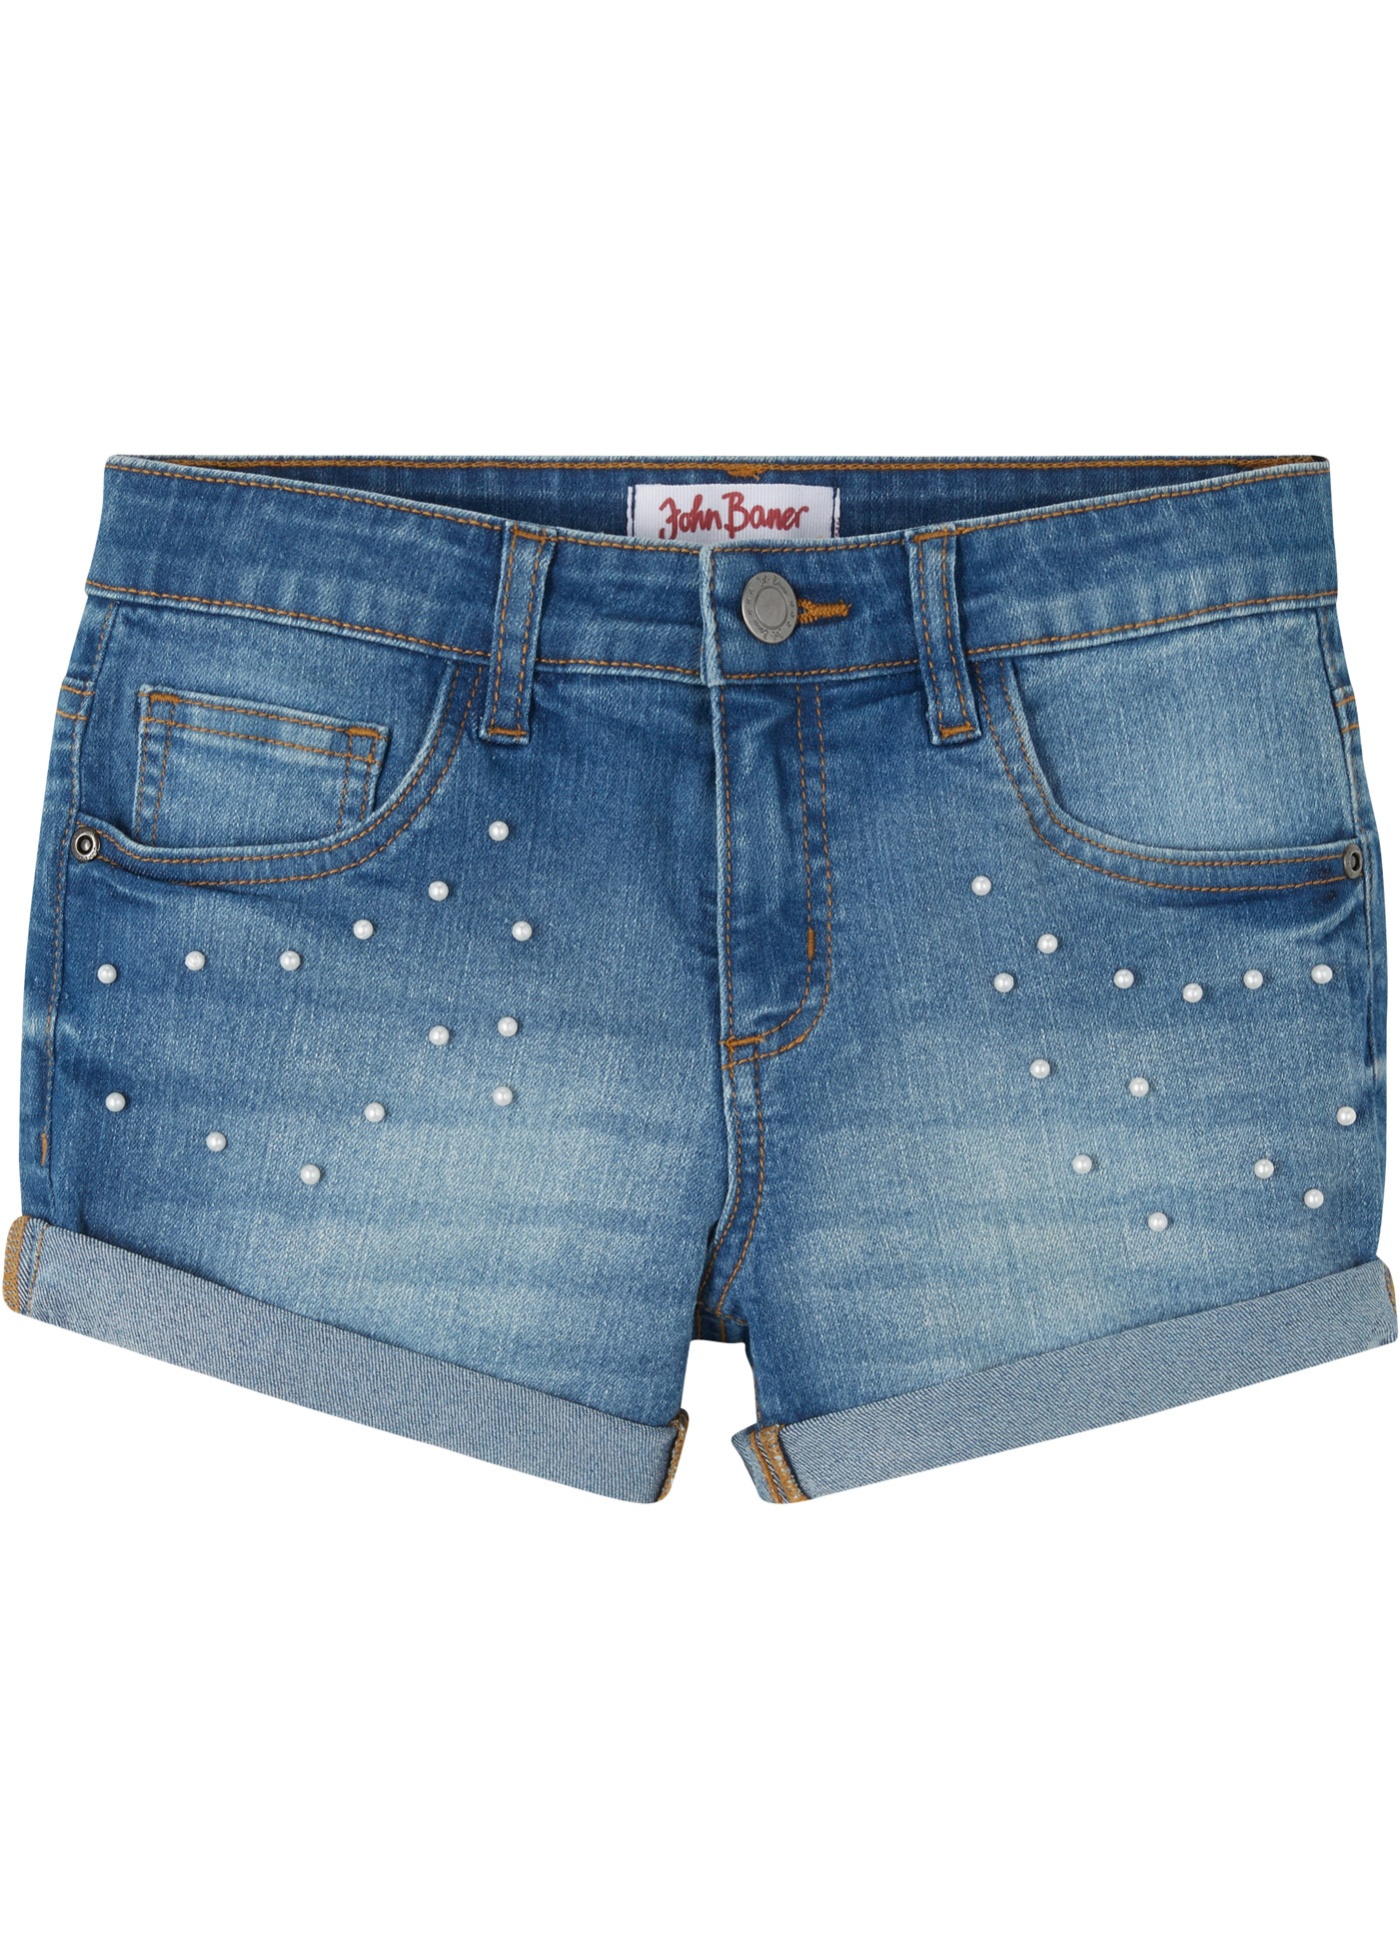 Mädchen Jeans-Shorts mit Perlen